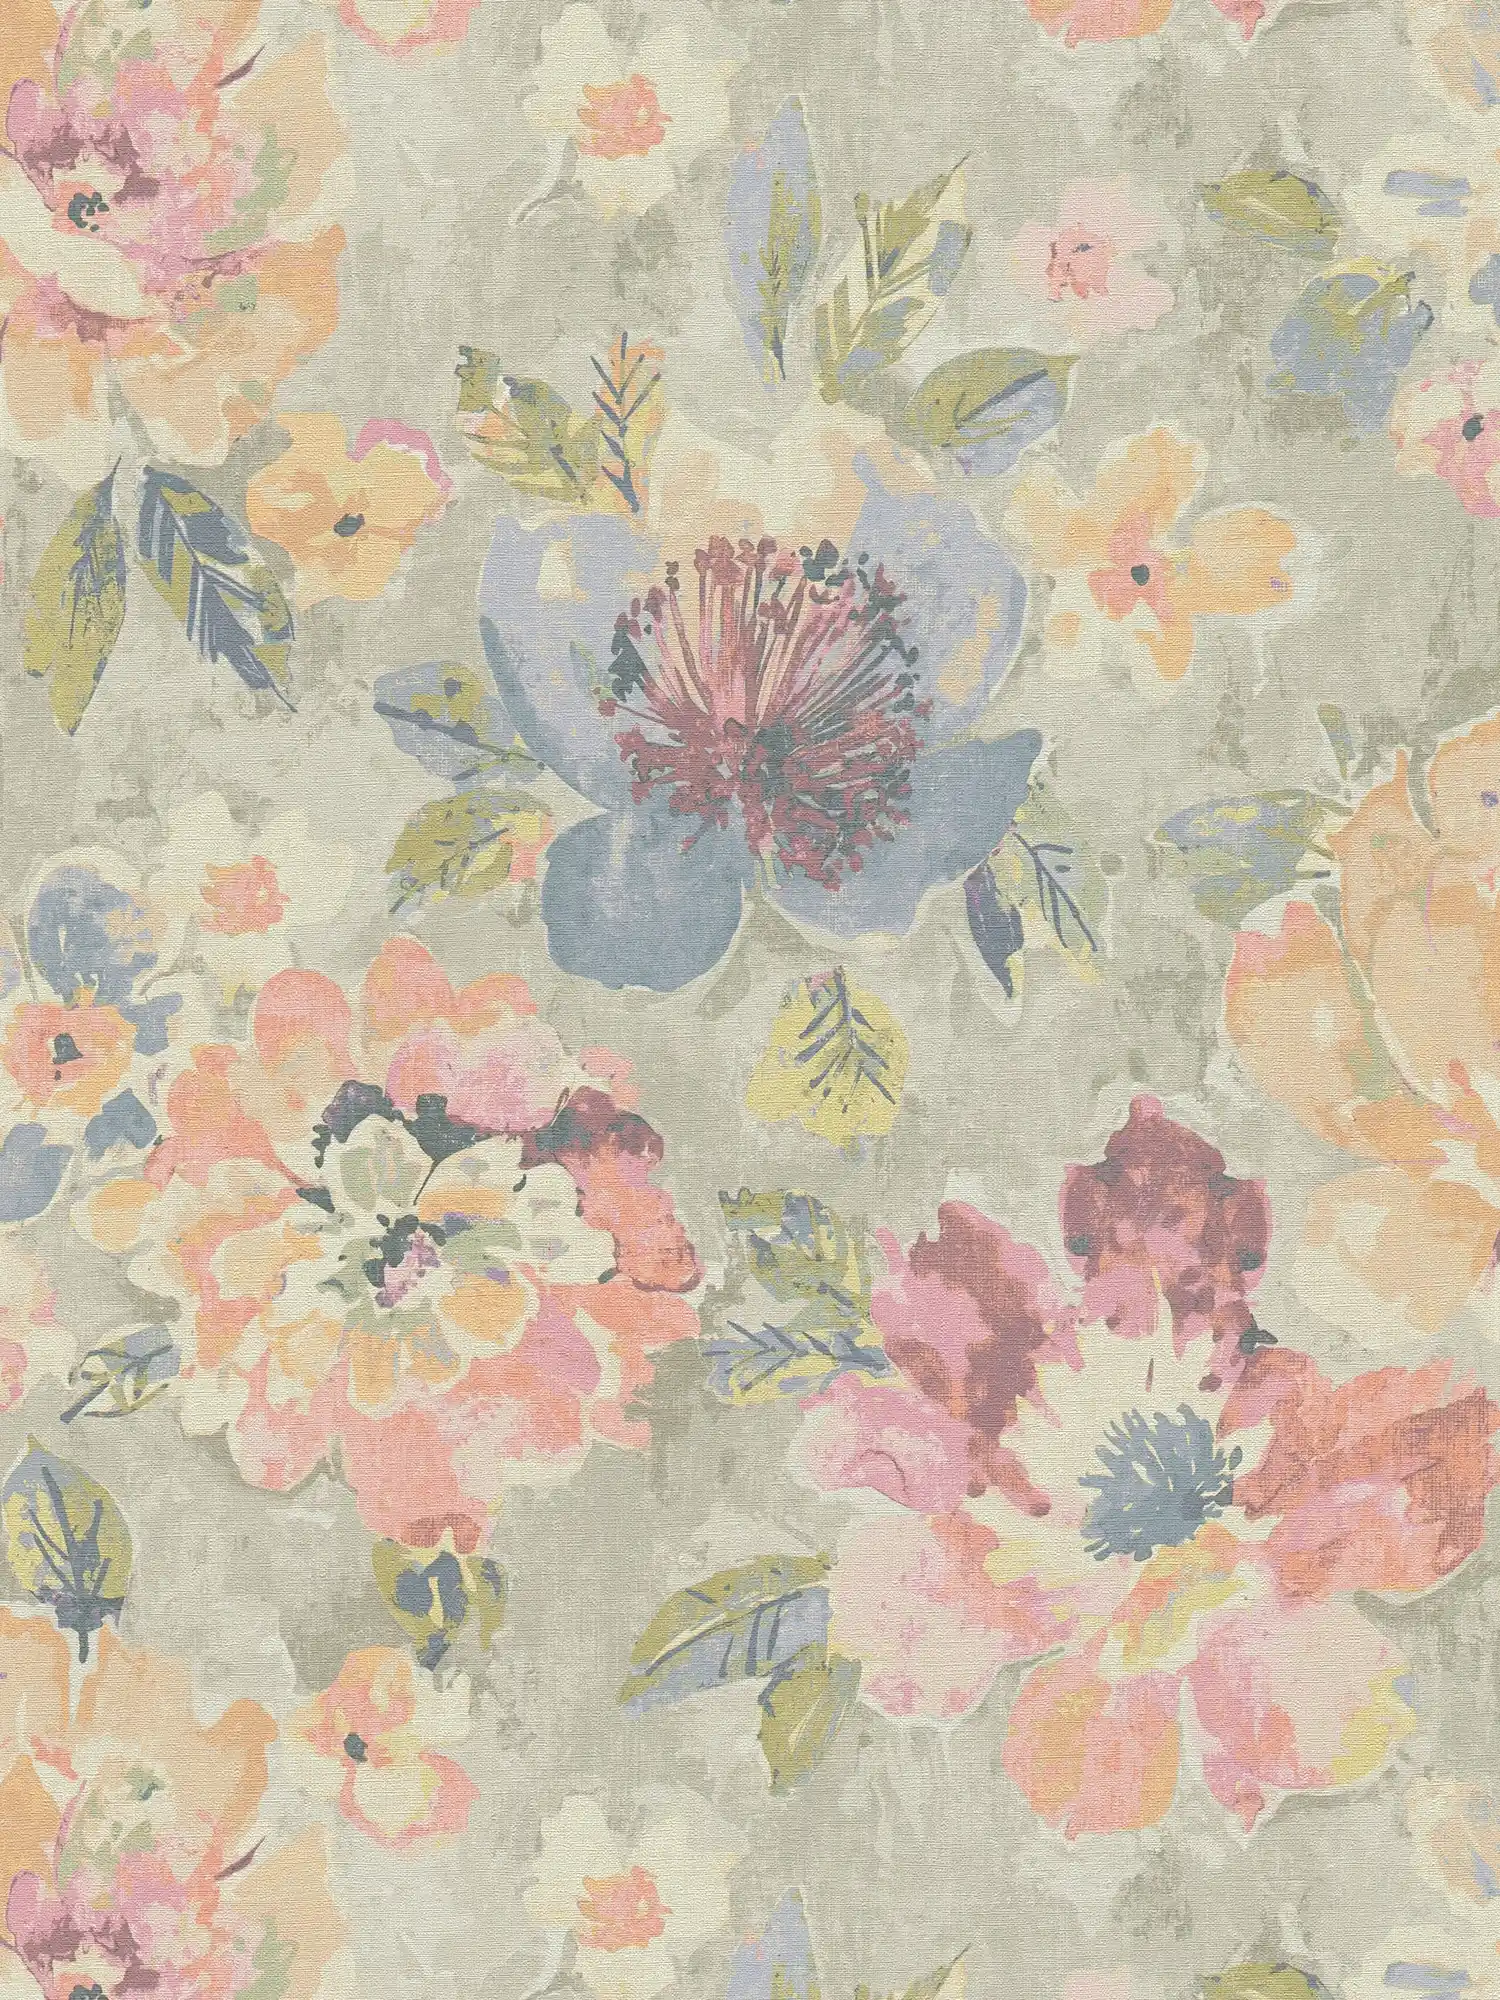 Blumen-Vliestapete im Aquarell- und Vintagelook – Bunt, Grau, Pink
